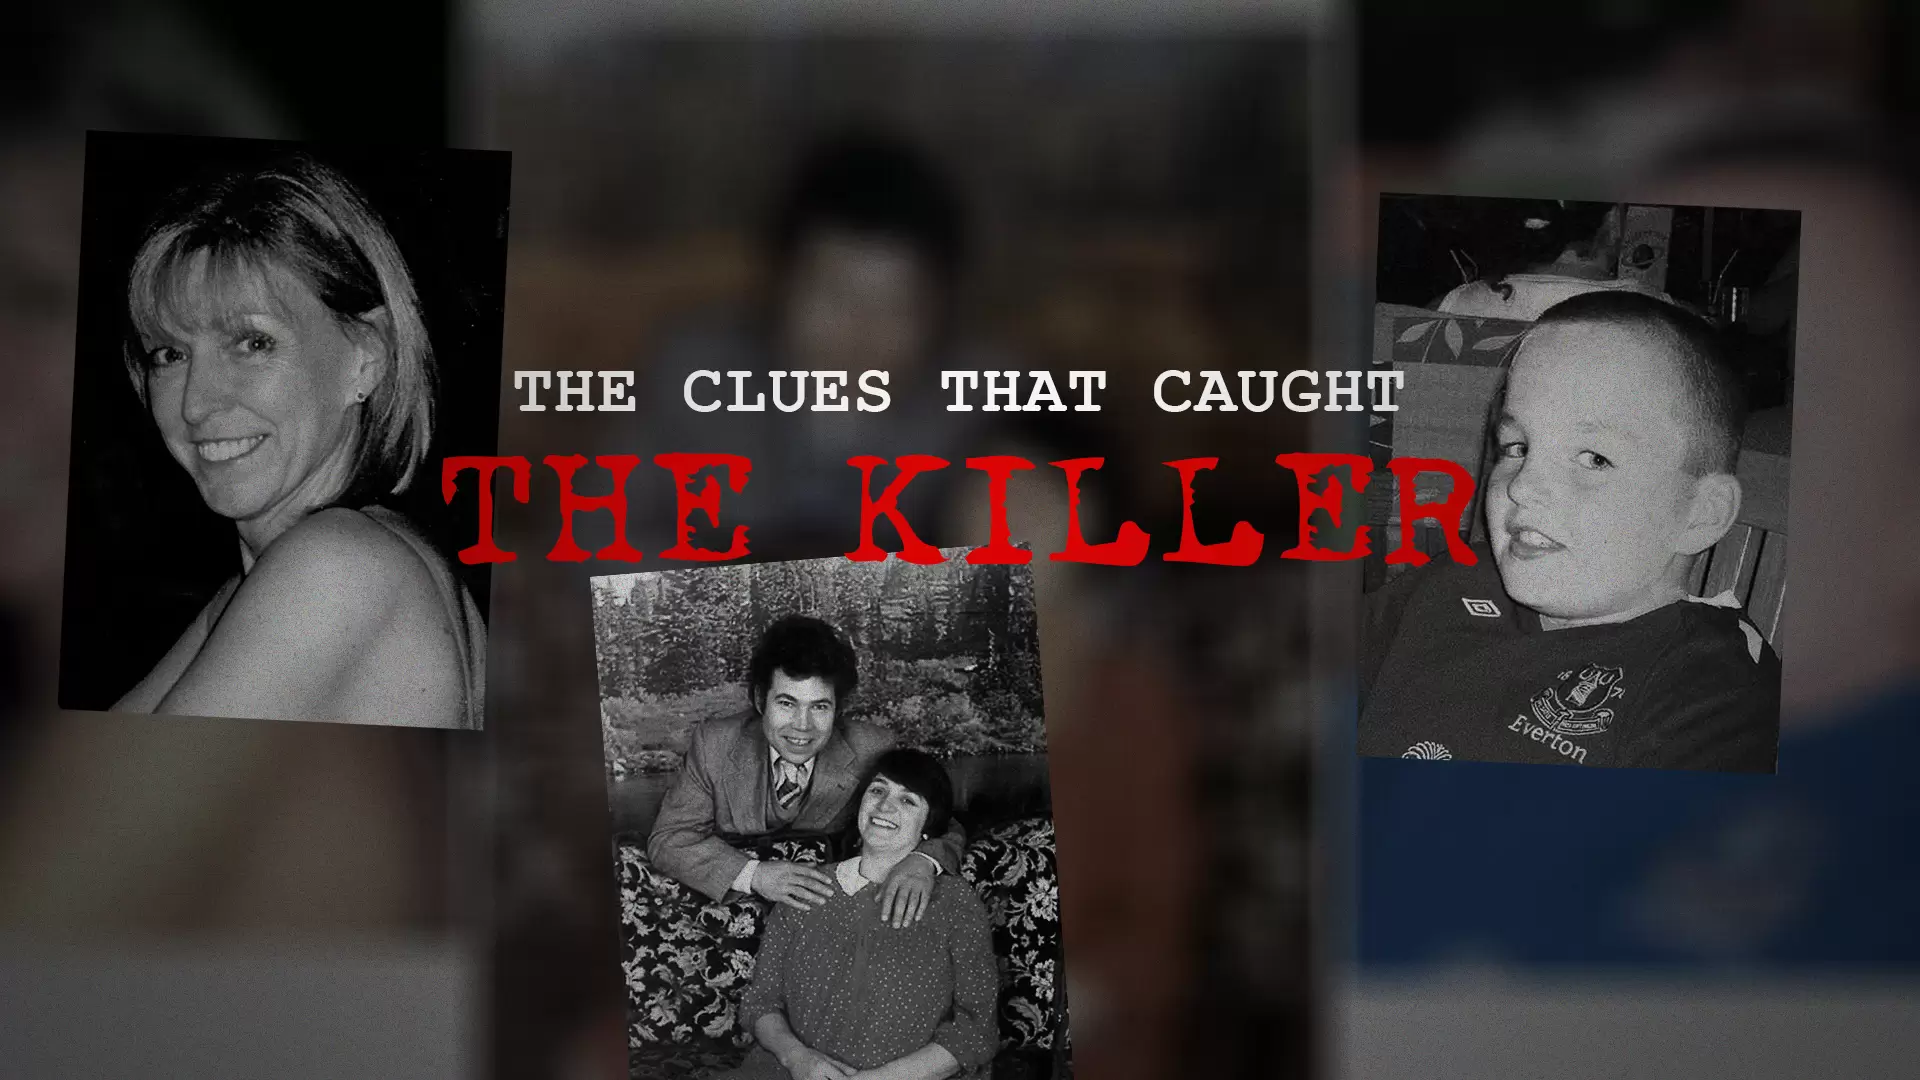 دانلود مستند The Clues That Caught the Killer 2019 (سرنخ هایی که قاتل را گیرانداخت)